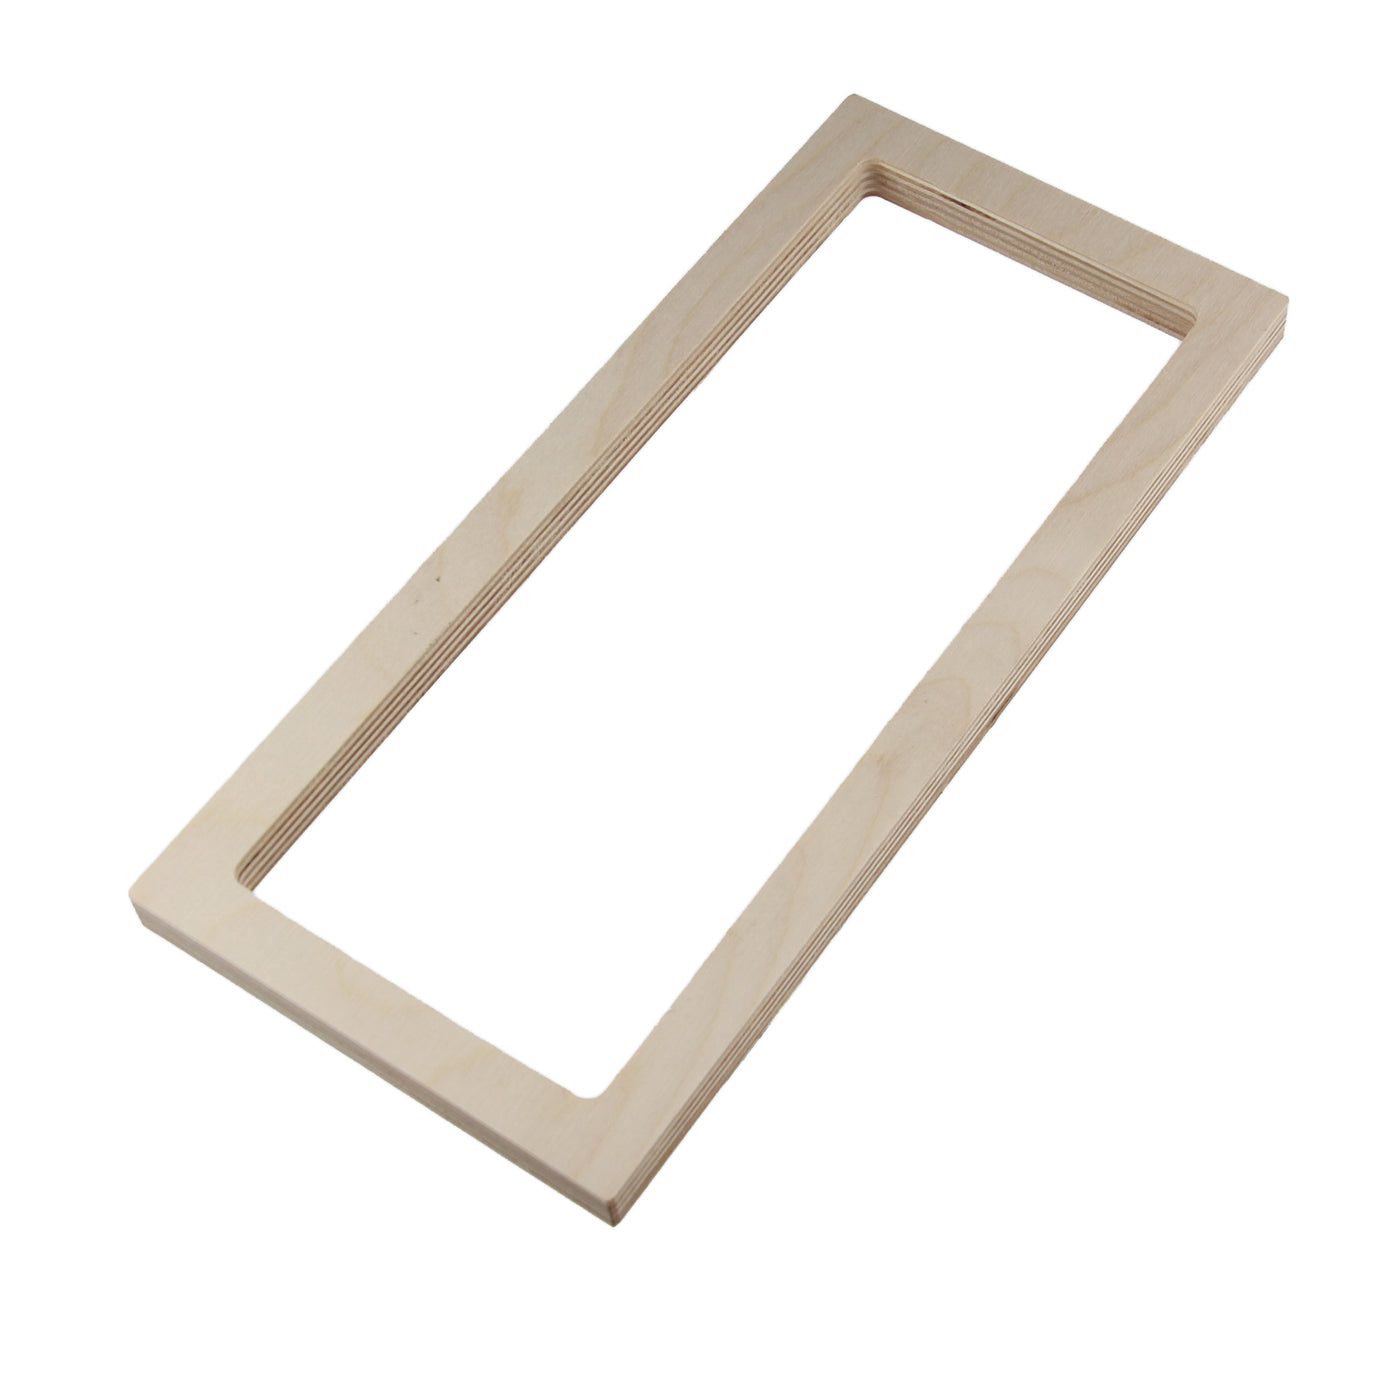 Fir Floor Register - Flush Mount 4"x10" (10mm lip and thinner frame)